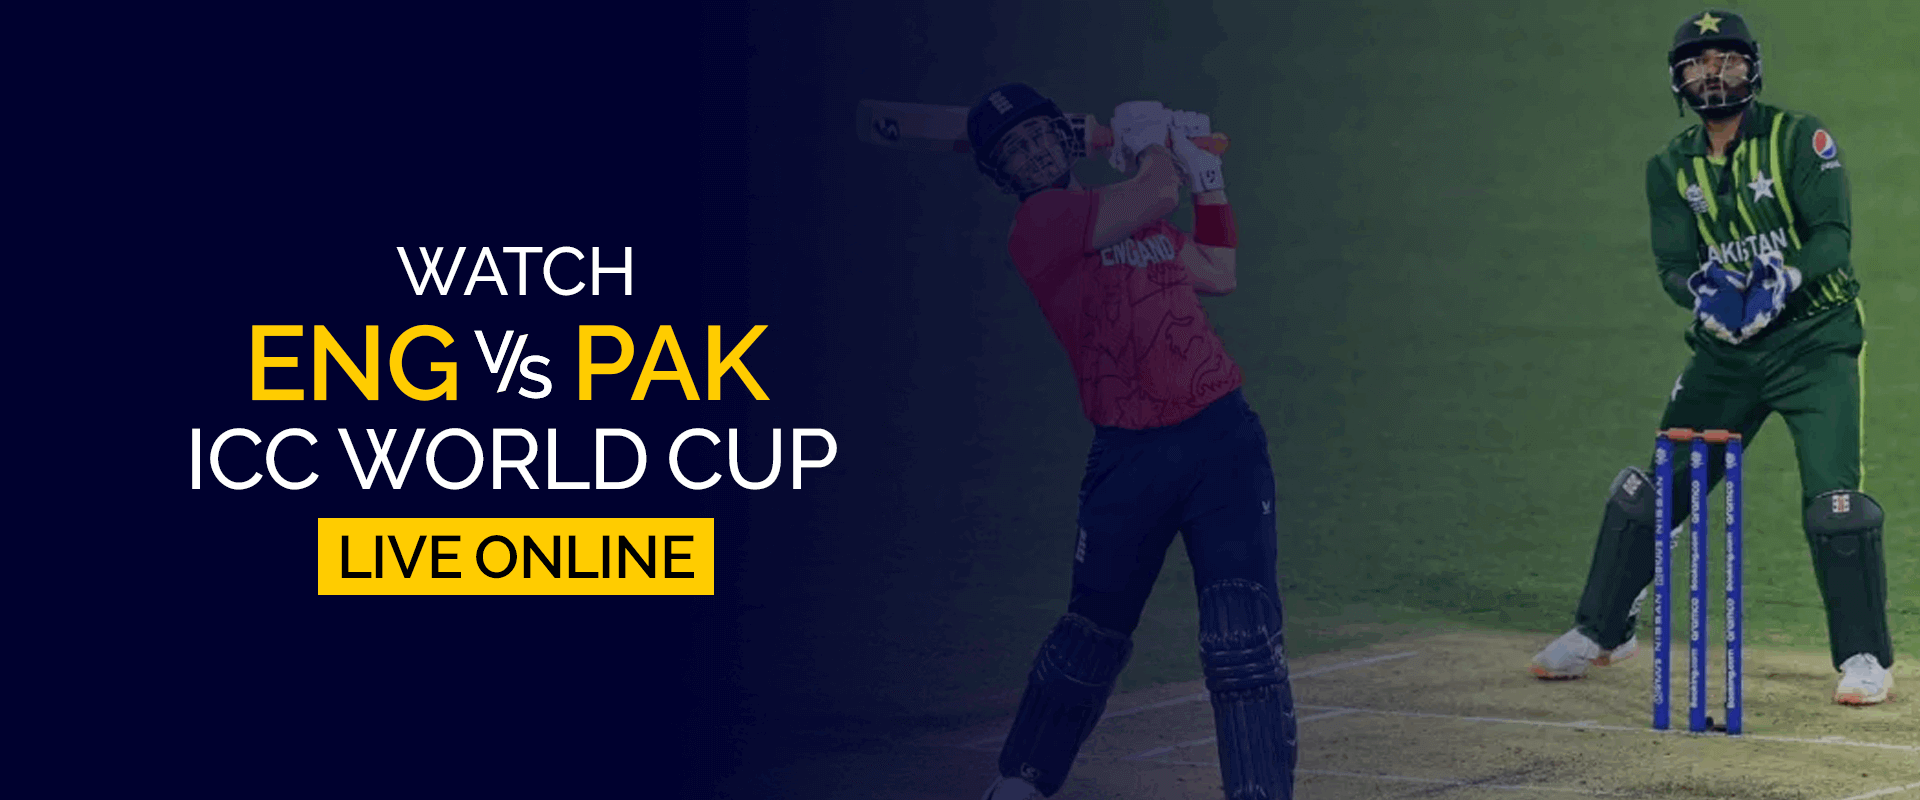 Regardez l'Angleterre contre le Pakistan Coupe du monde ICC en direct en ligne